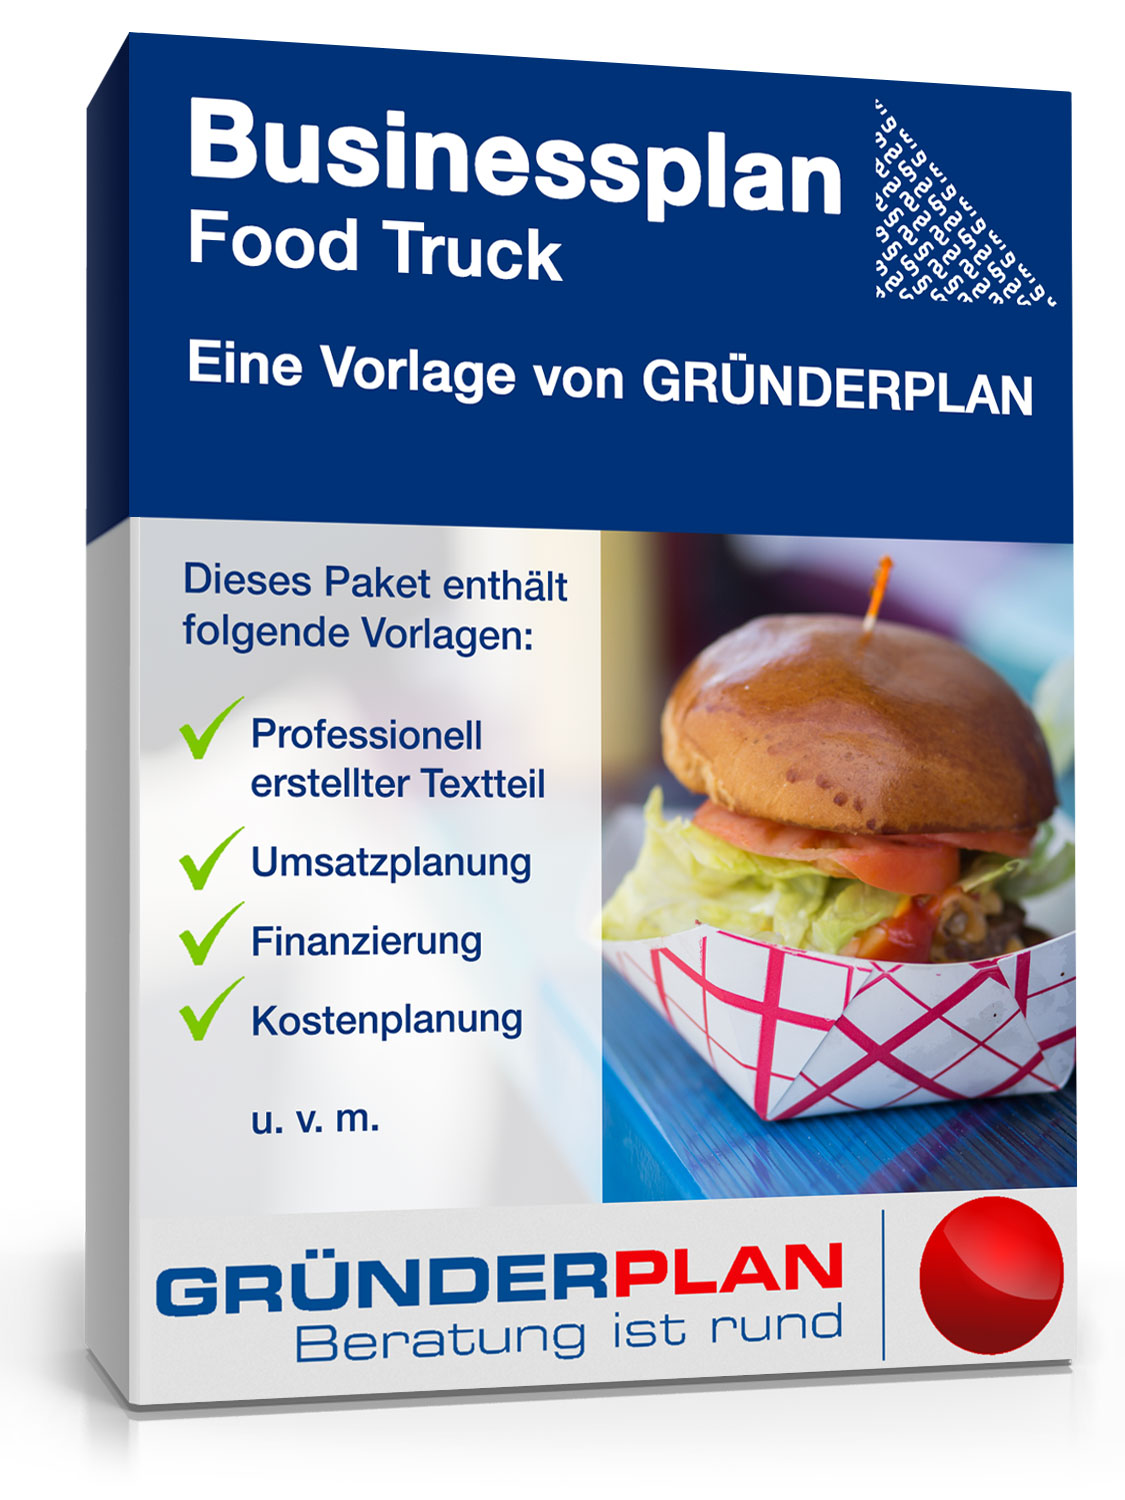 Hauptbild des Produkts: Businessplan Food Truck